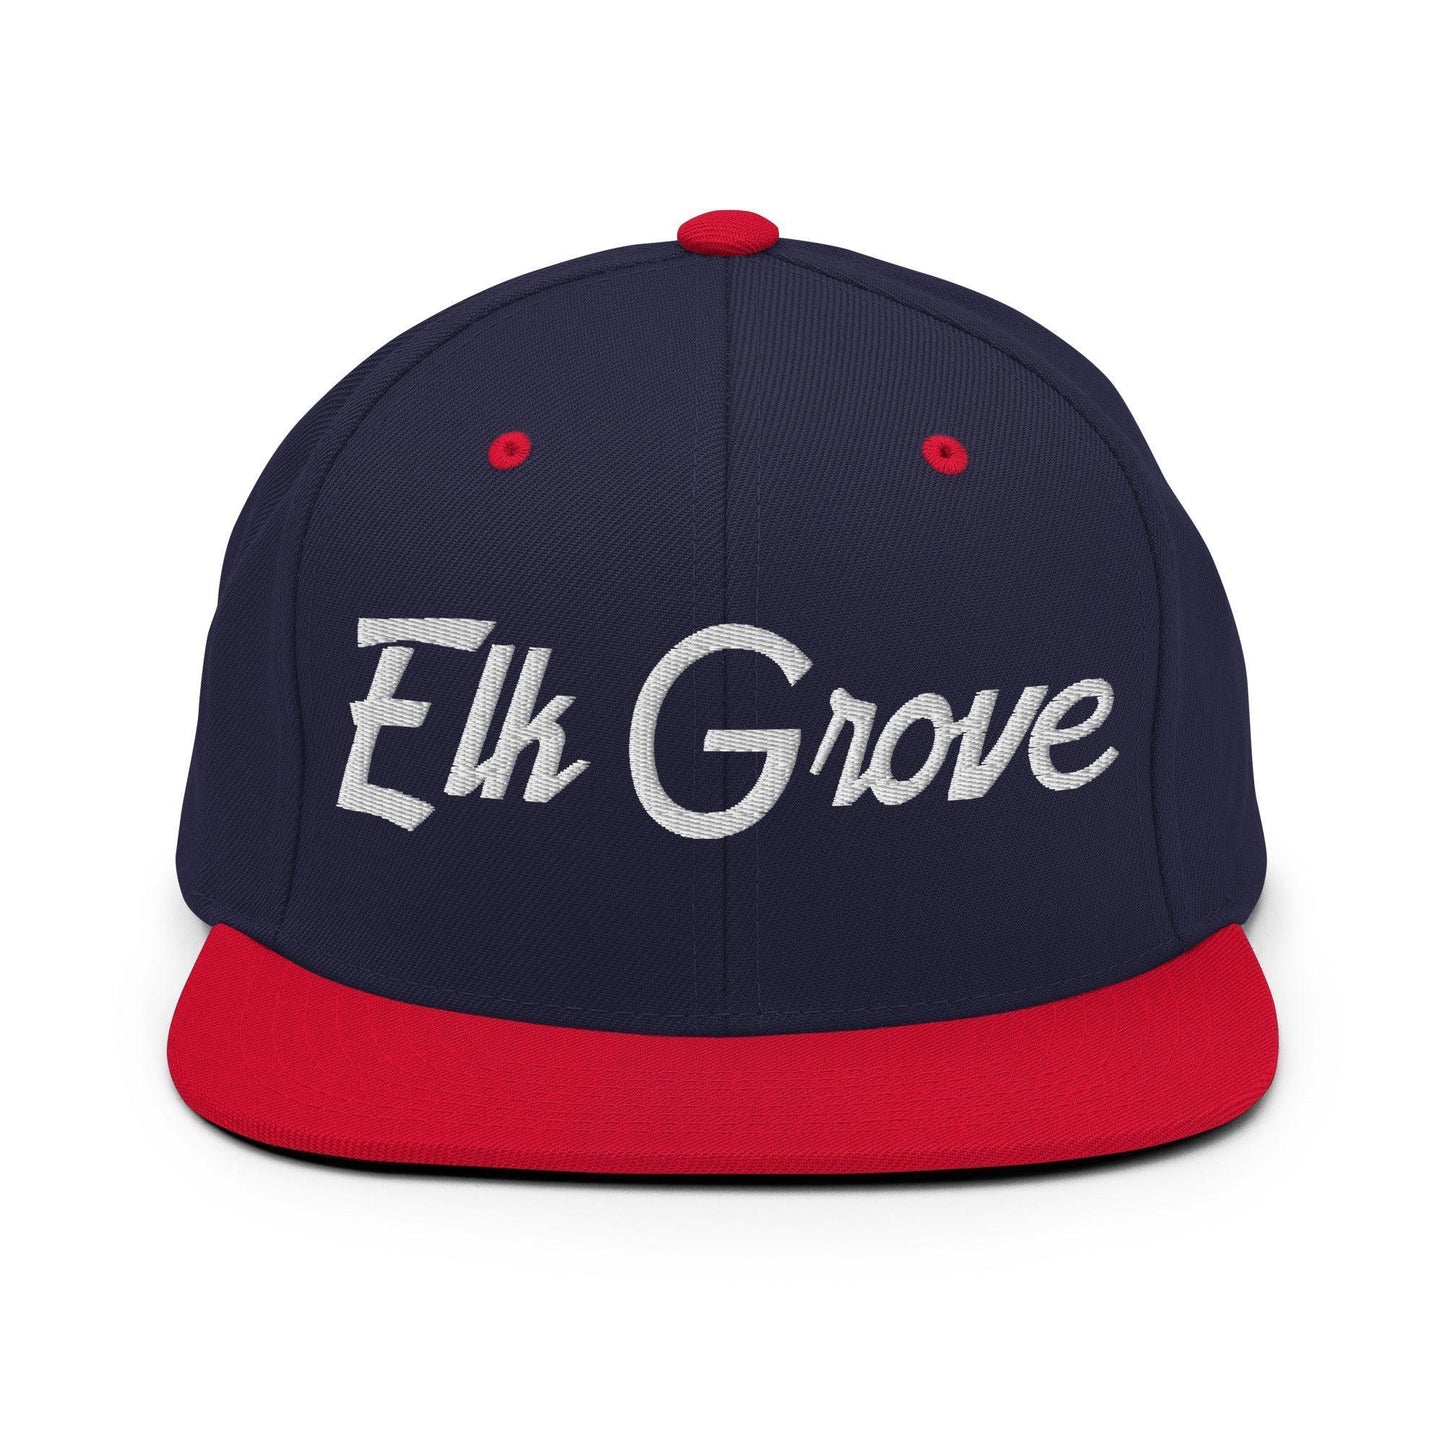 Elk Grove Script Snapback Hat Navy/ Red